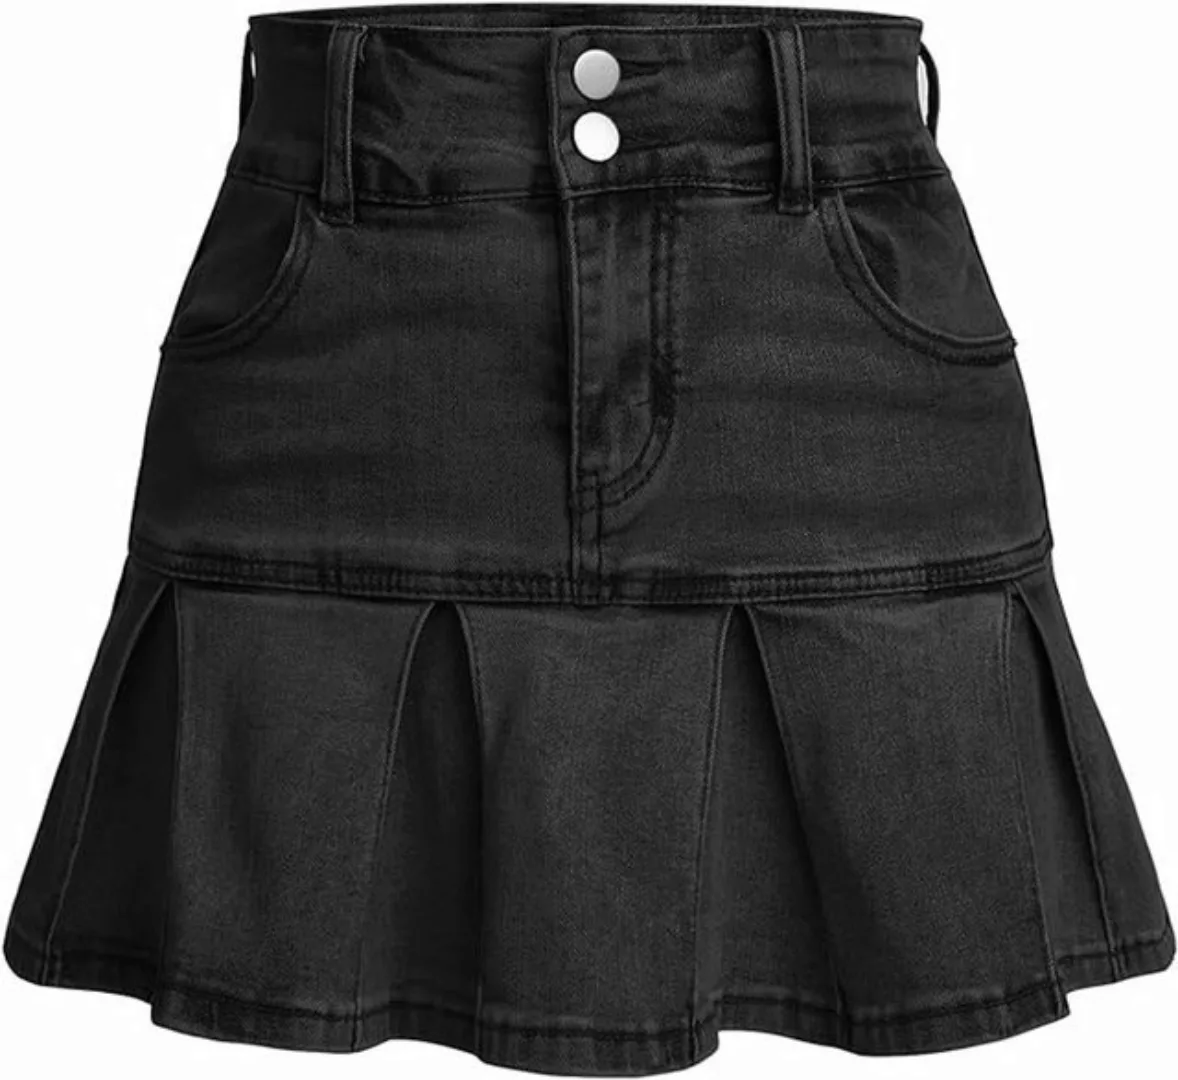 FIDDY Minirock Damen-Jeans-Minirock mit hoher Taille, schmal, lässig günstig online kaufen